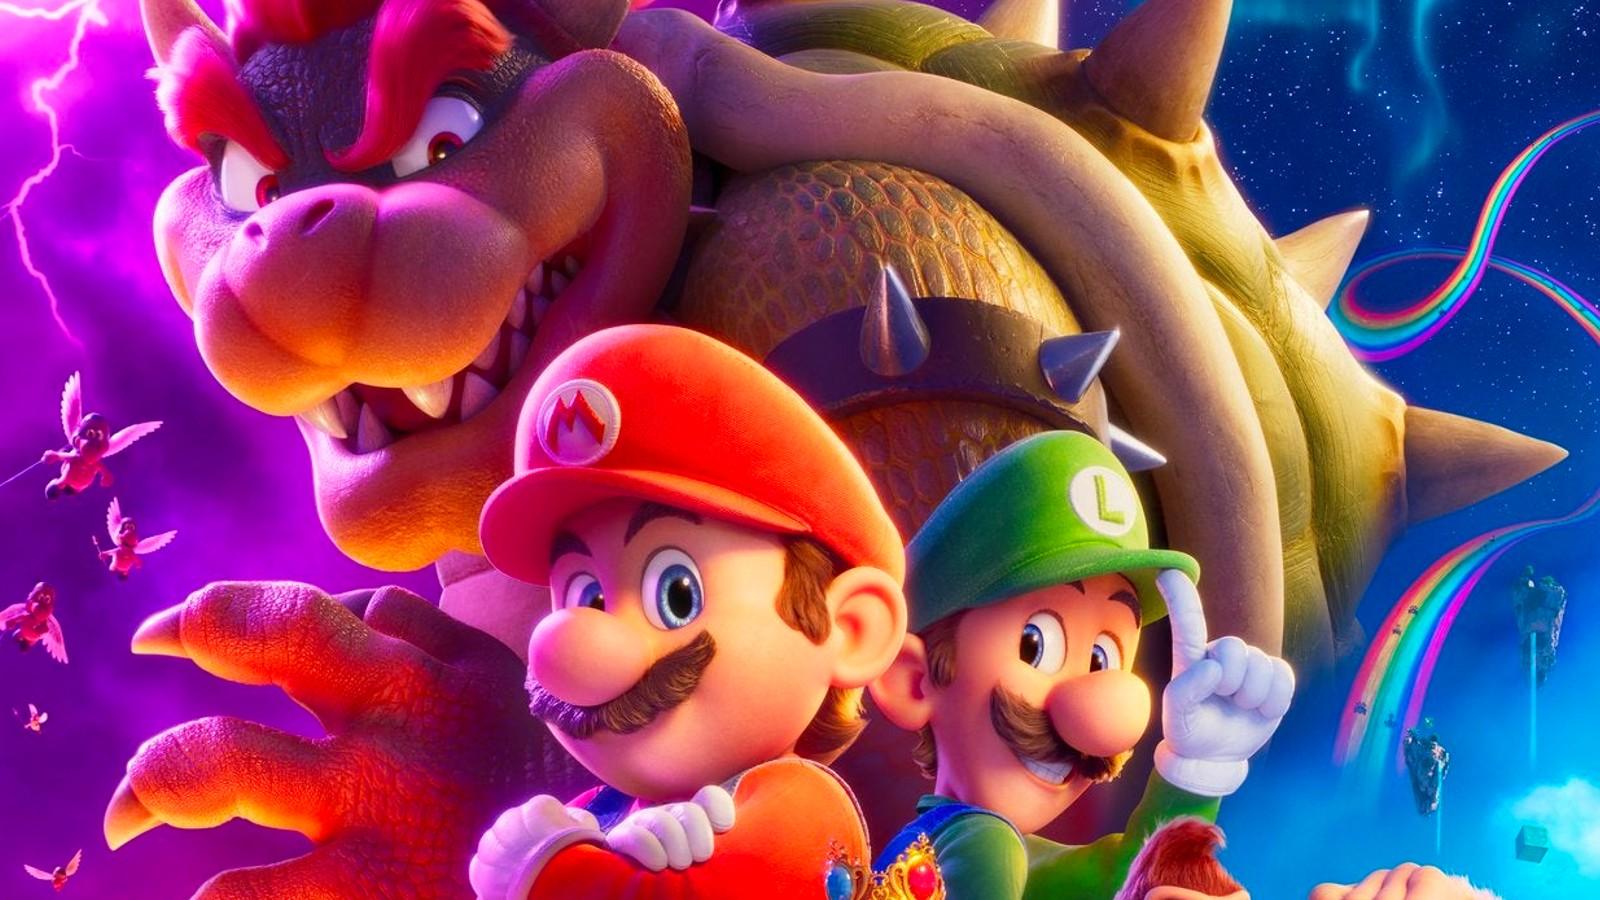 Super Mario Bros movie: Release date, trailer, cast, plot & more